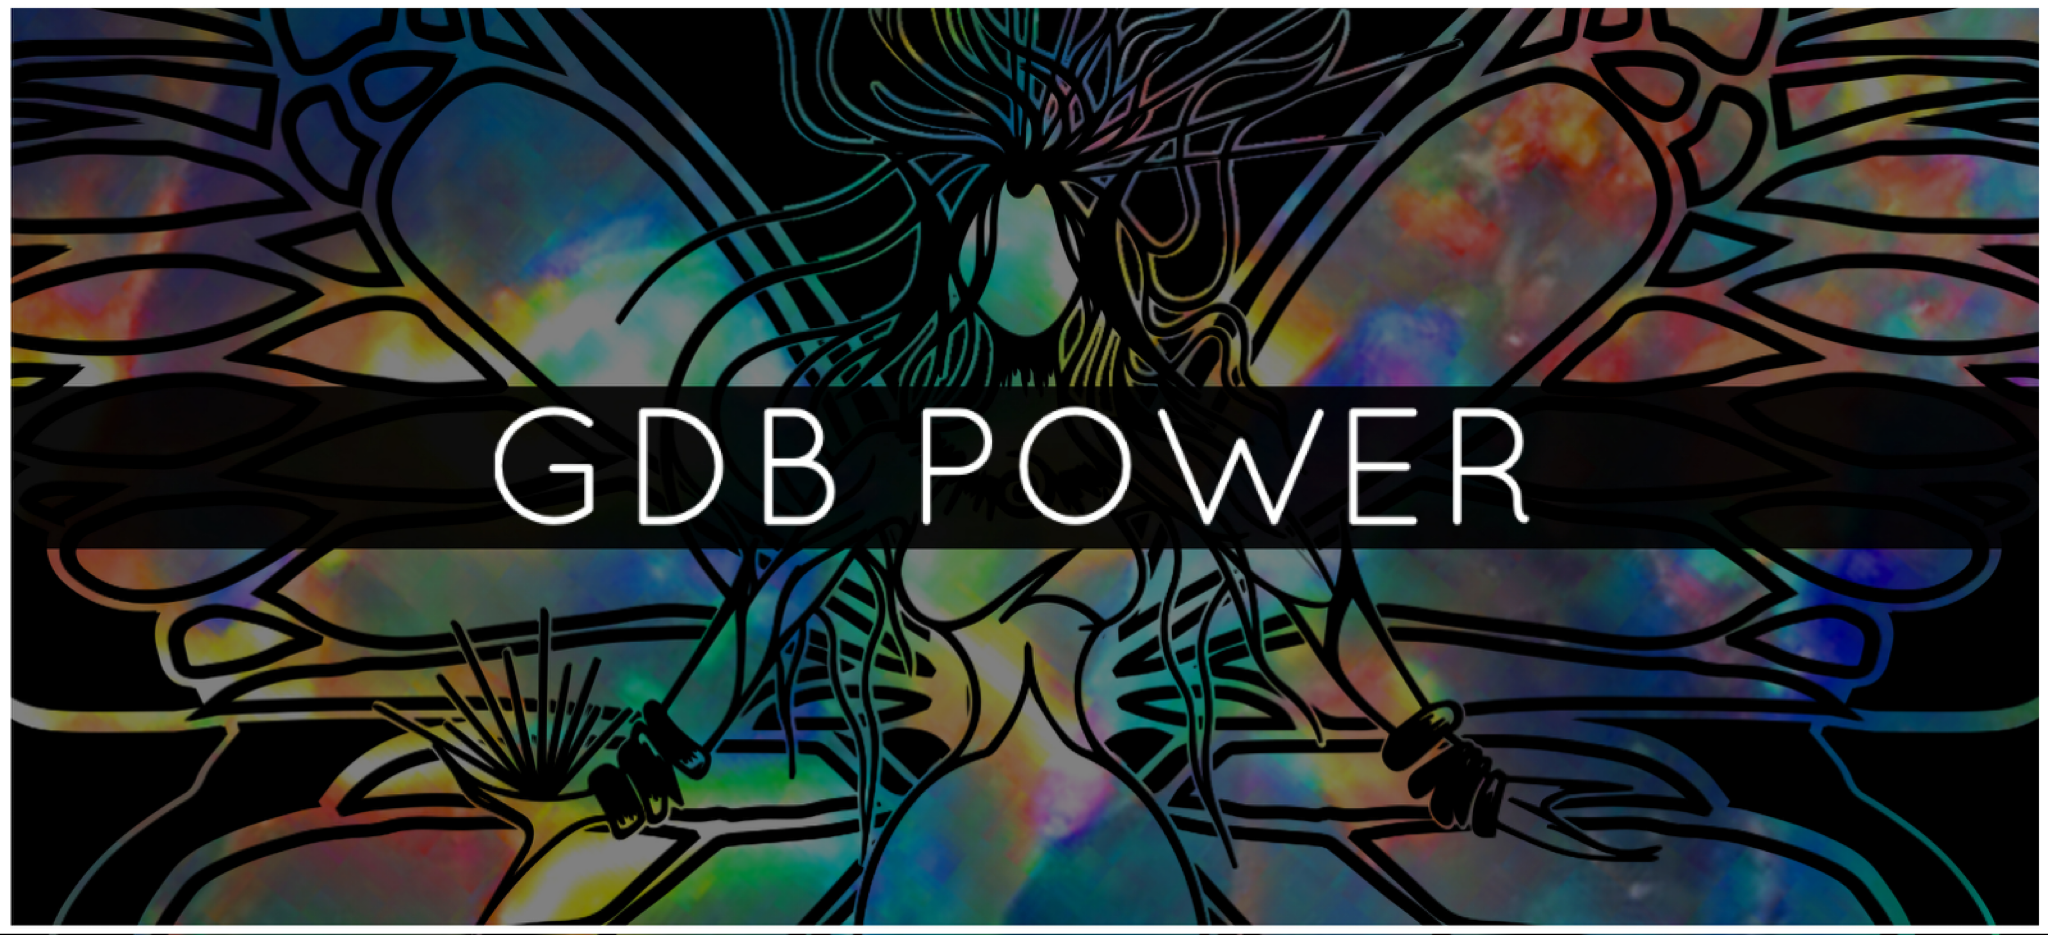 GDB POWER TALISMAN™